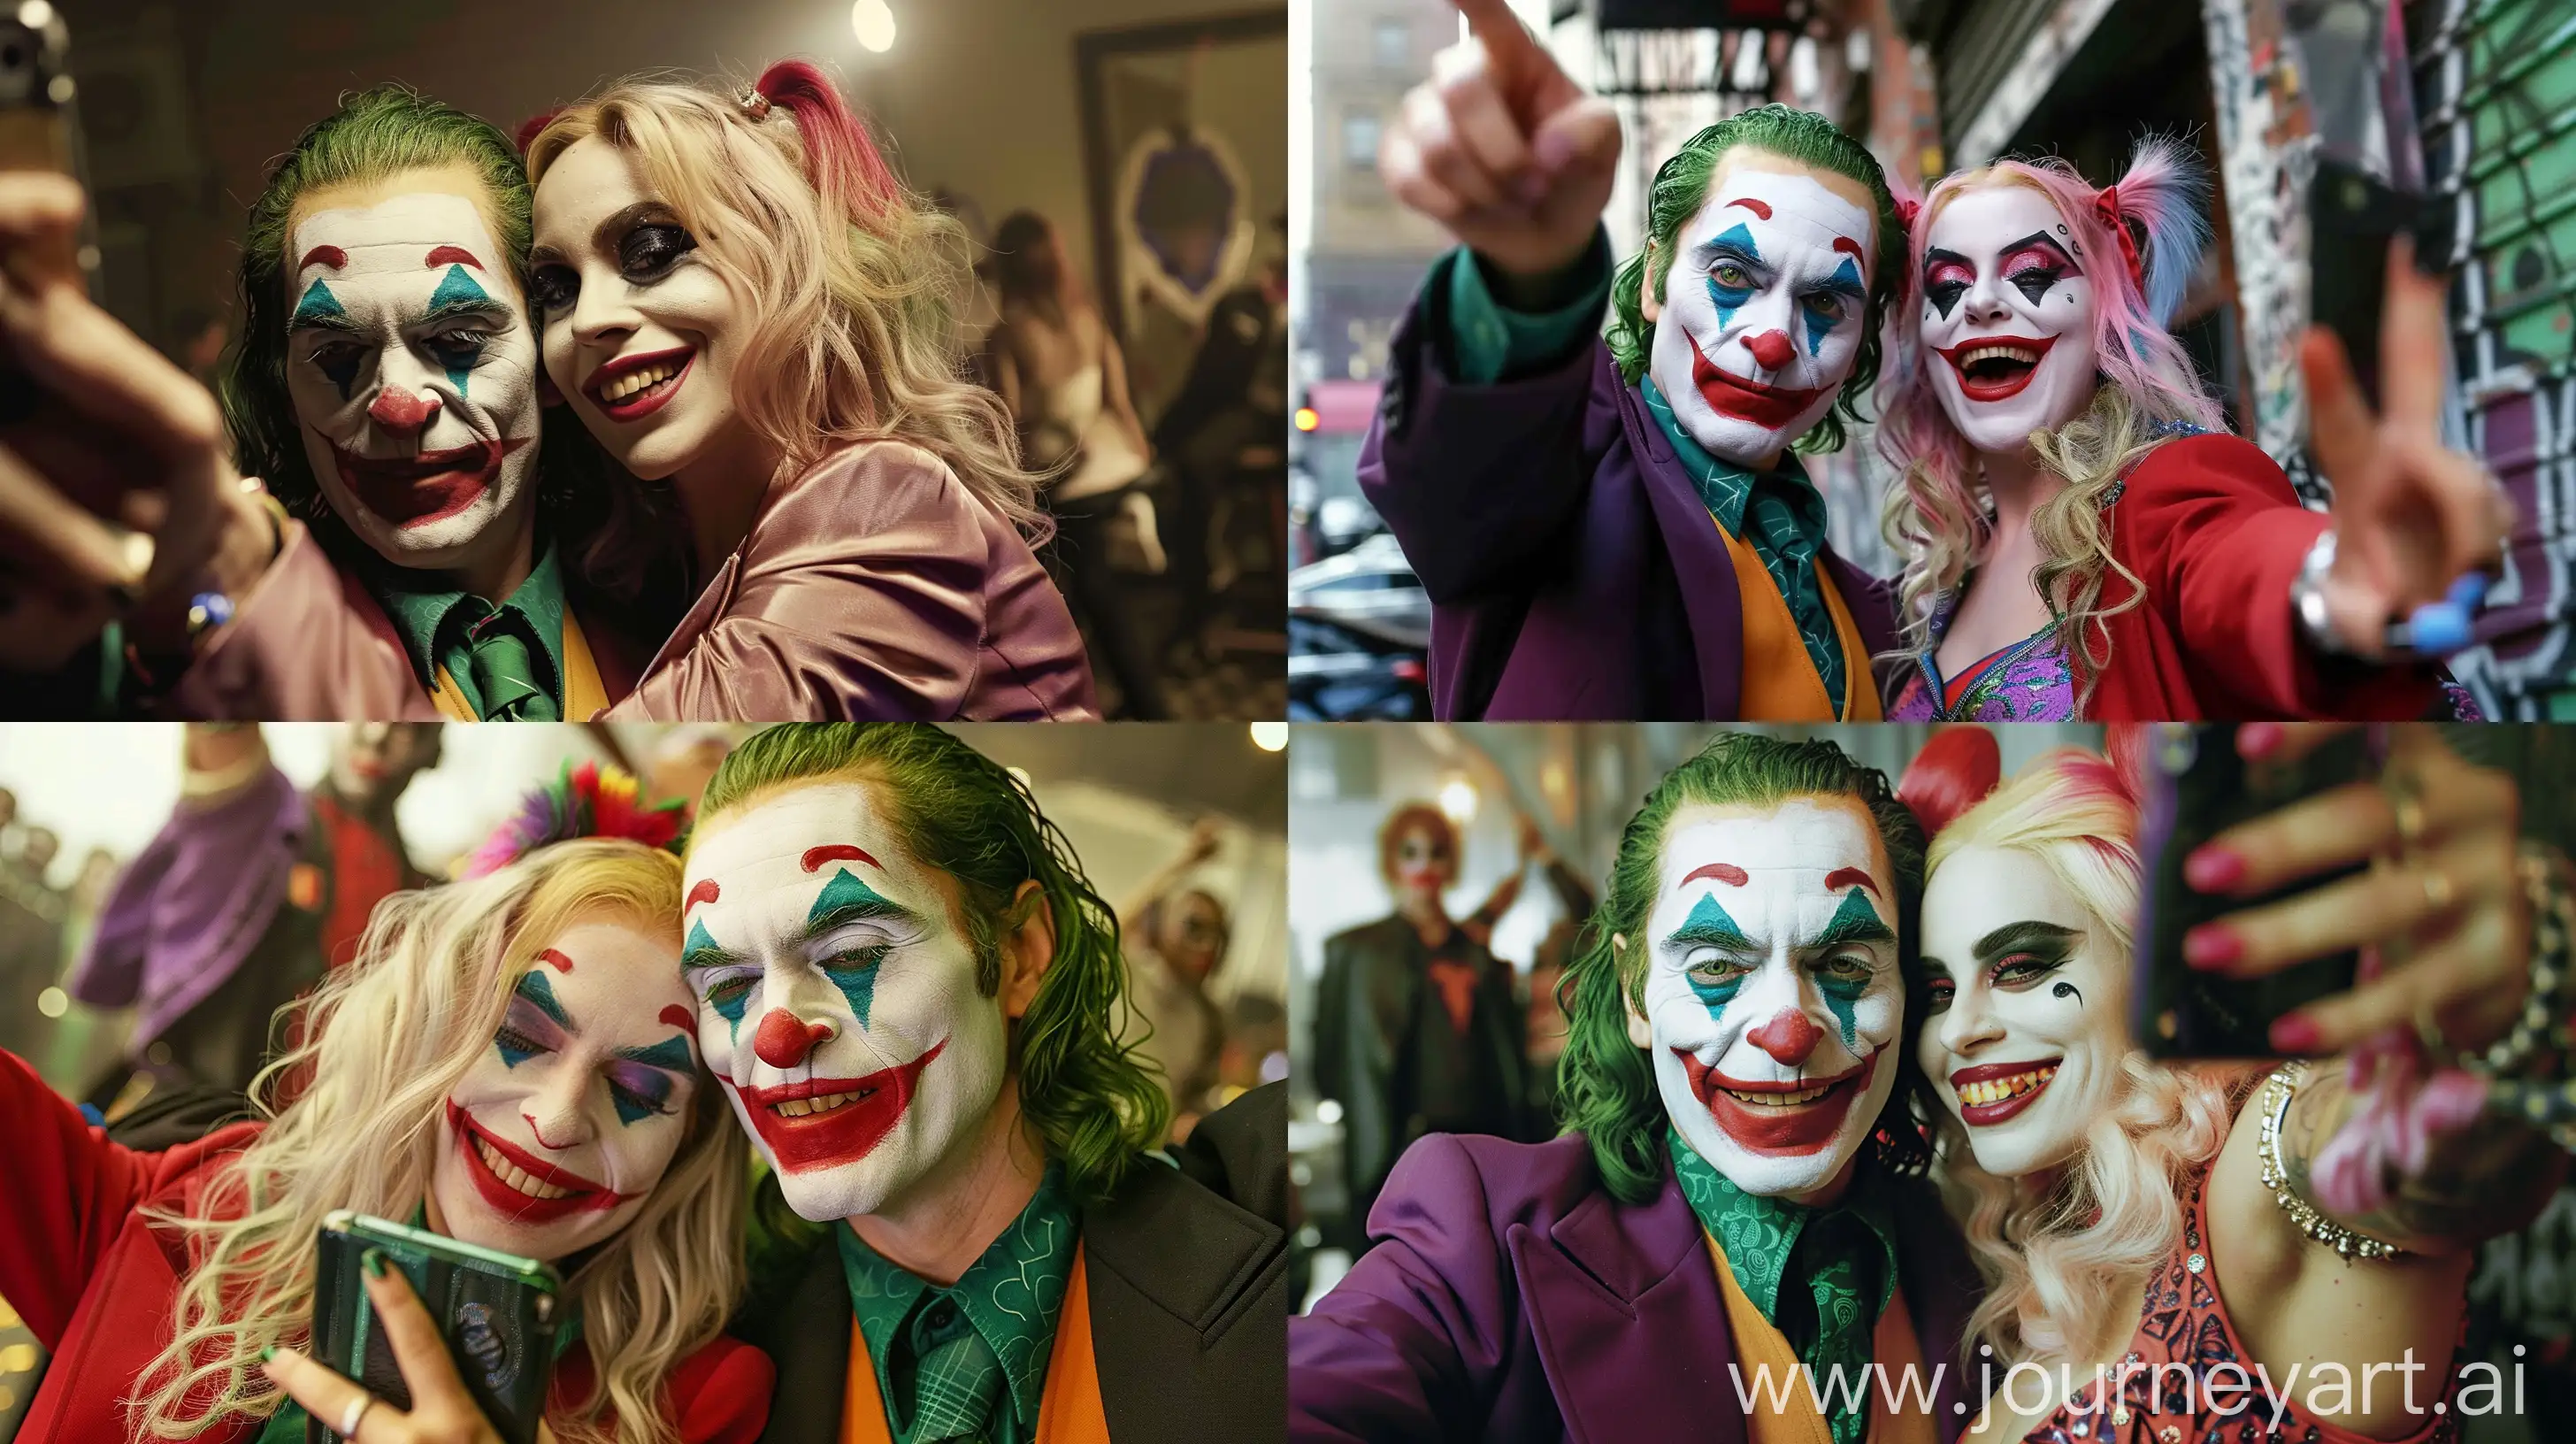 Selfie Joker and Lady Gaga as Harley Quinn. --ar 16:9